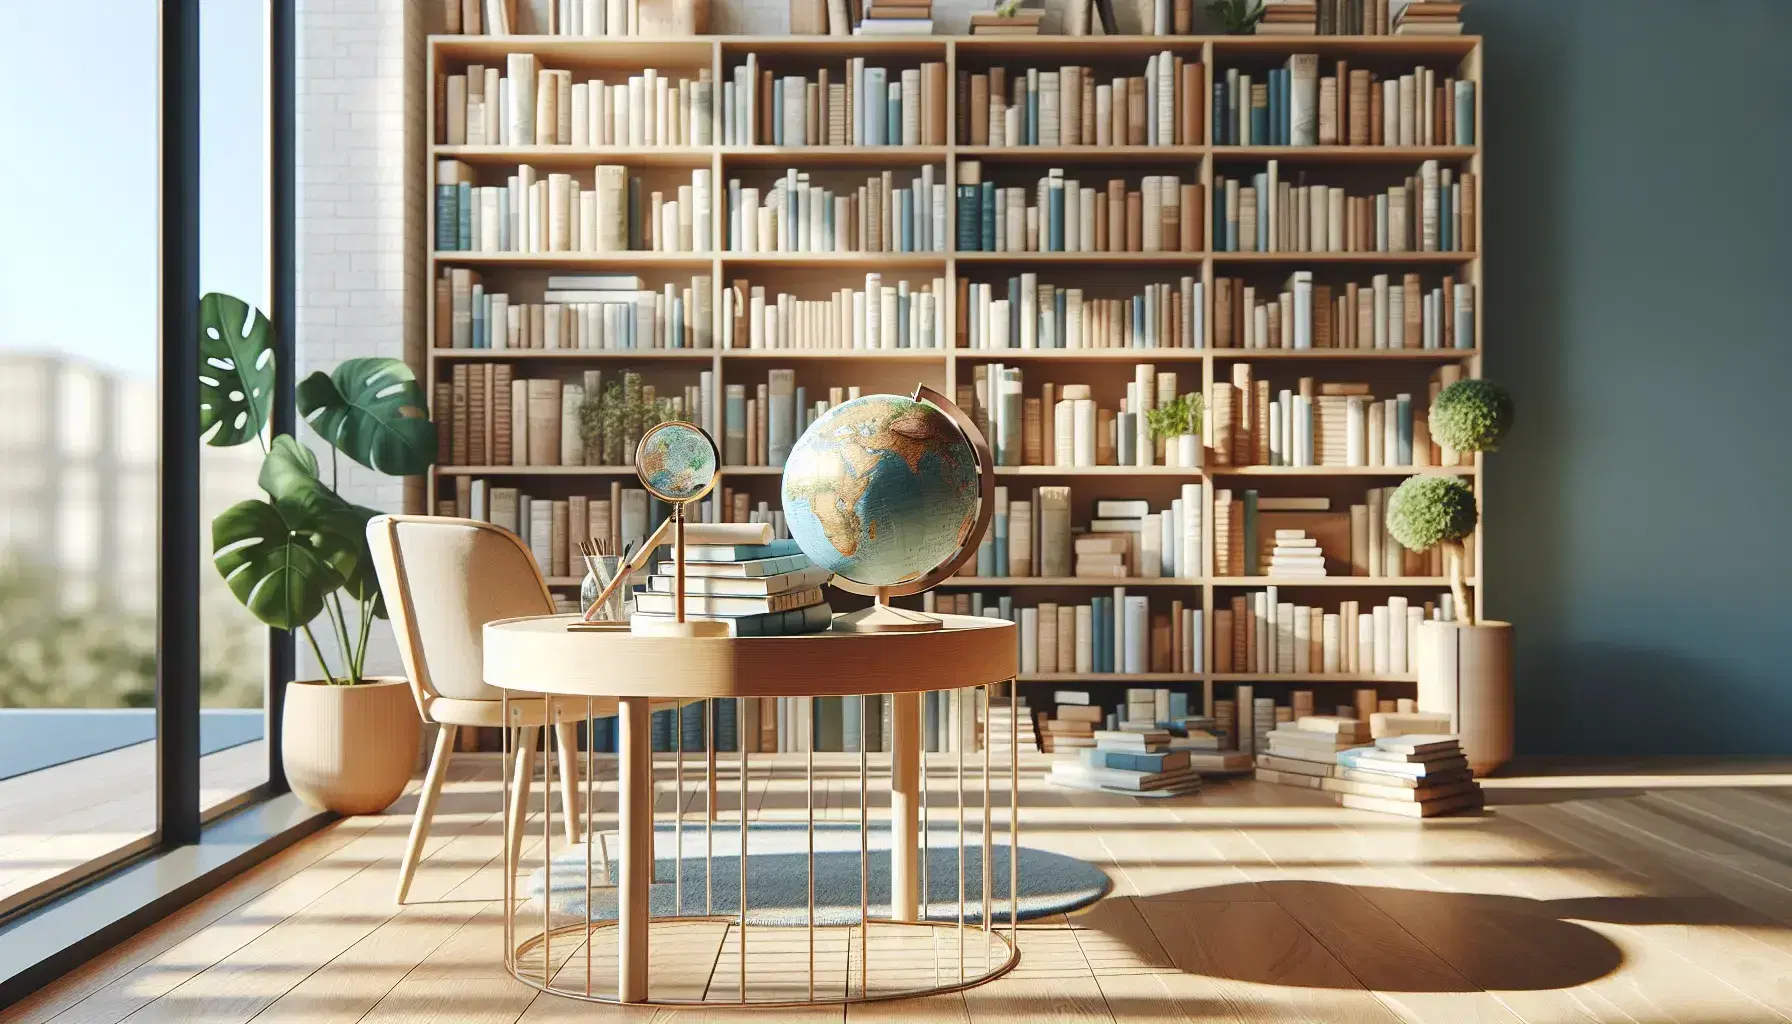 Biblioteca moderna y luminosa con estanterías de madera repletas de libros, mesa con globo terráqueo y lupa, silla ergonómica y planta interior.